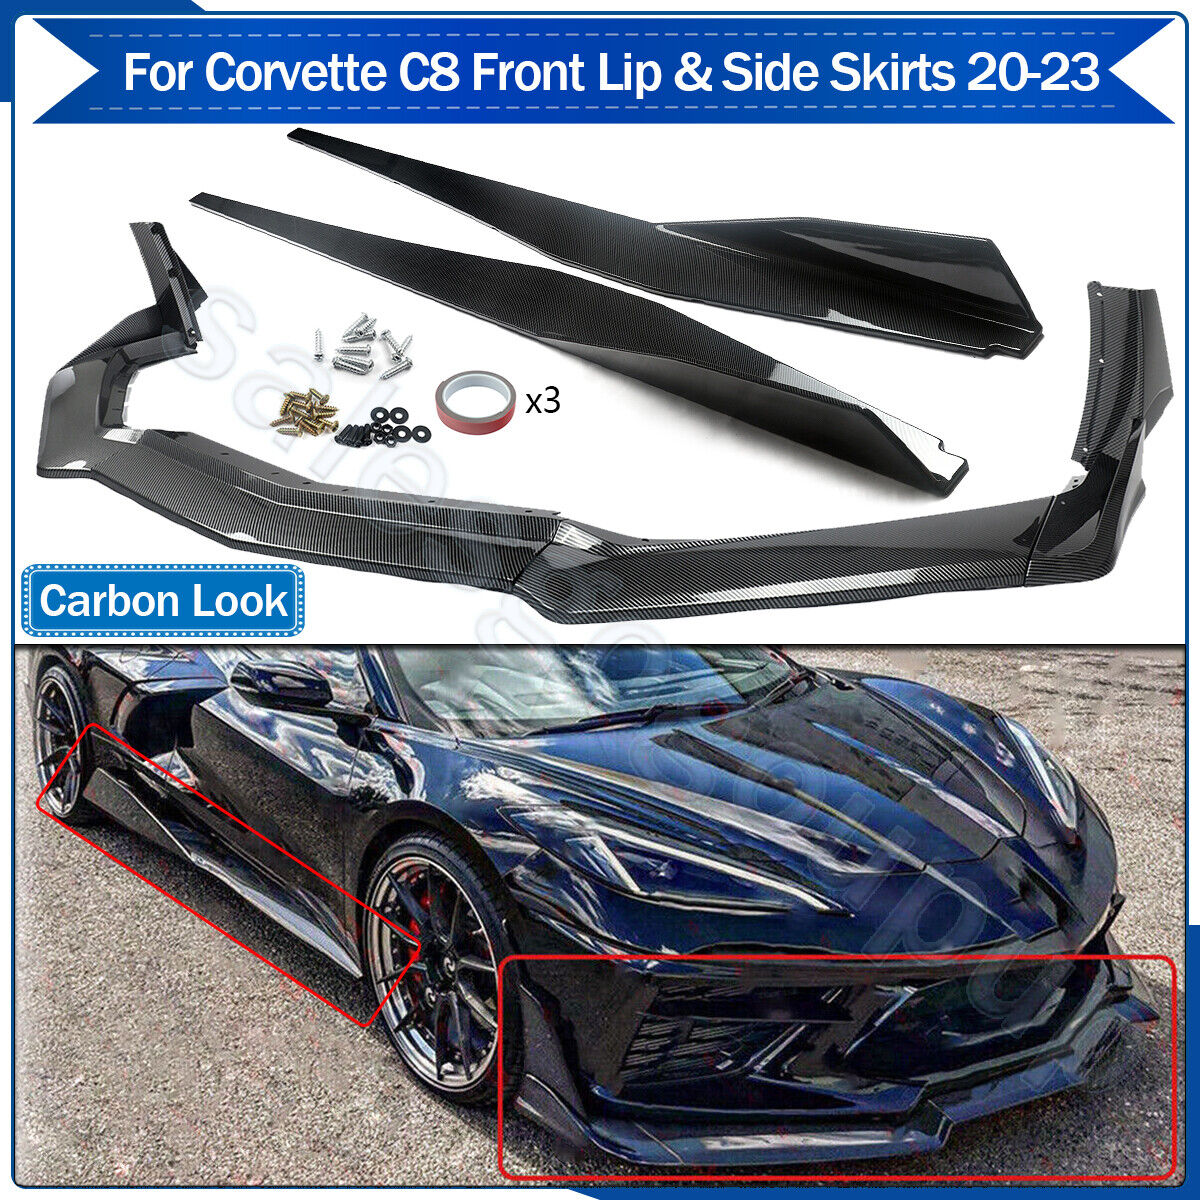 Fits 2020-23 Corvette C8 Front Lip + Side Skirts Extension Lip Carbon Fiber Look